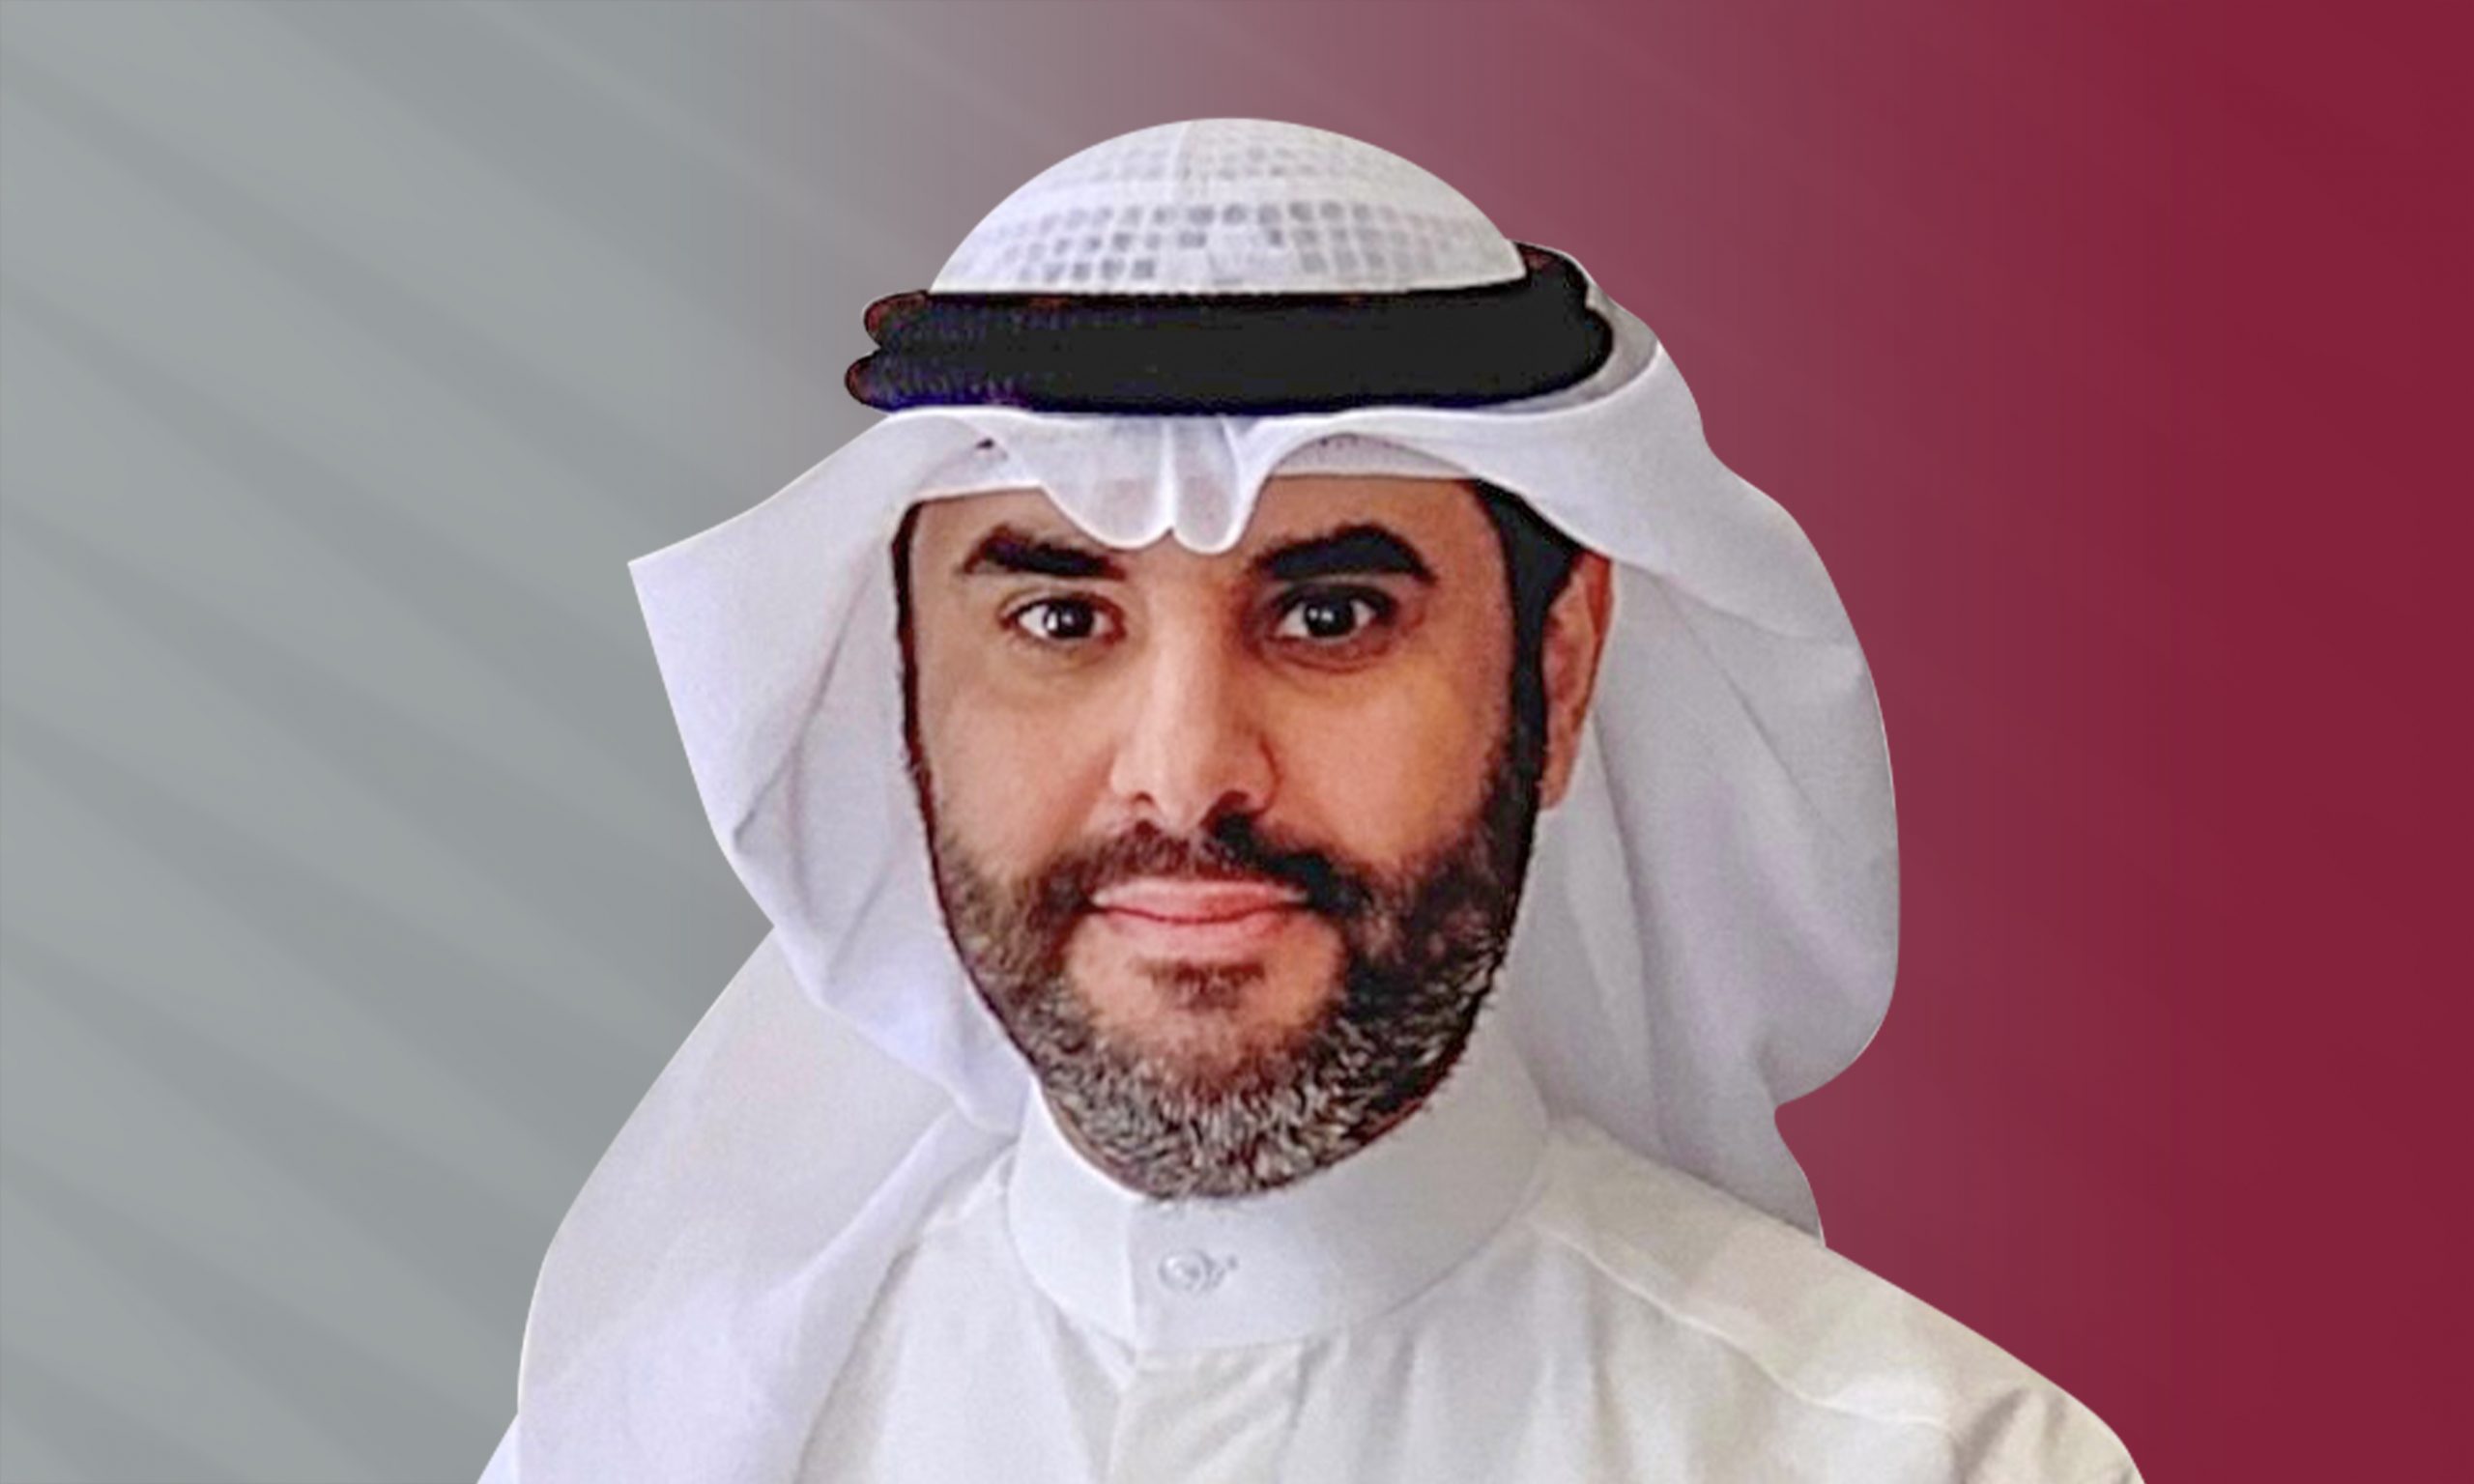 Mohammed Fahad Al Rashed